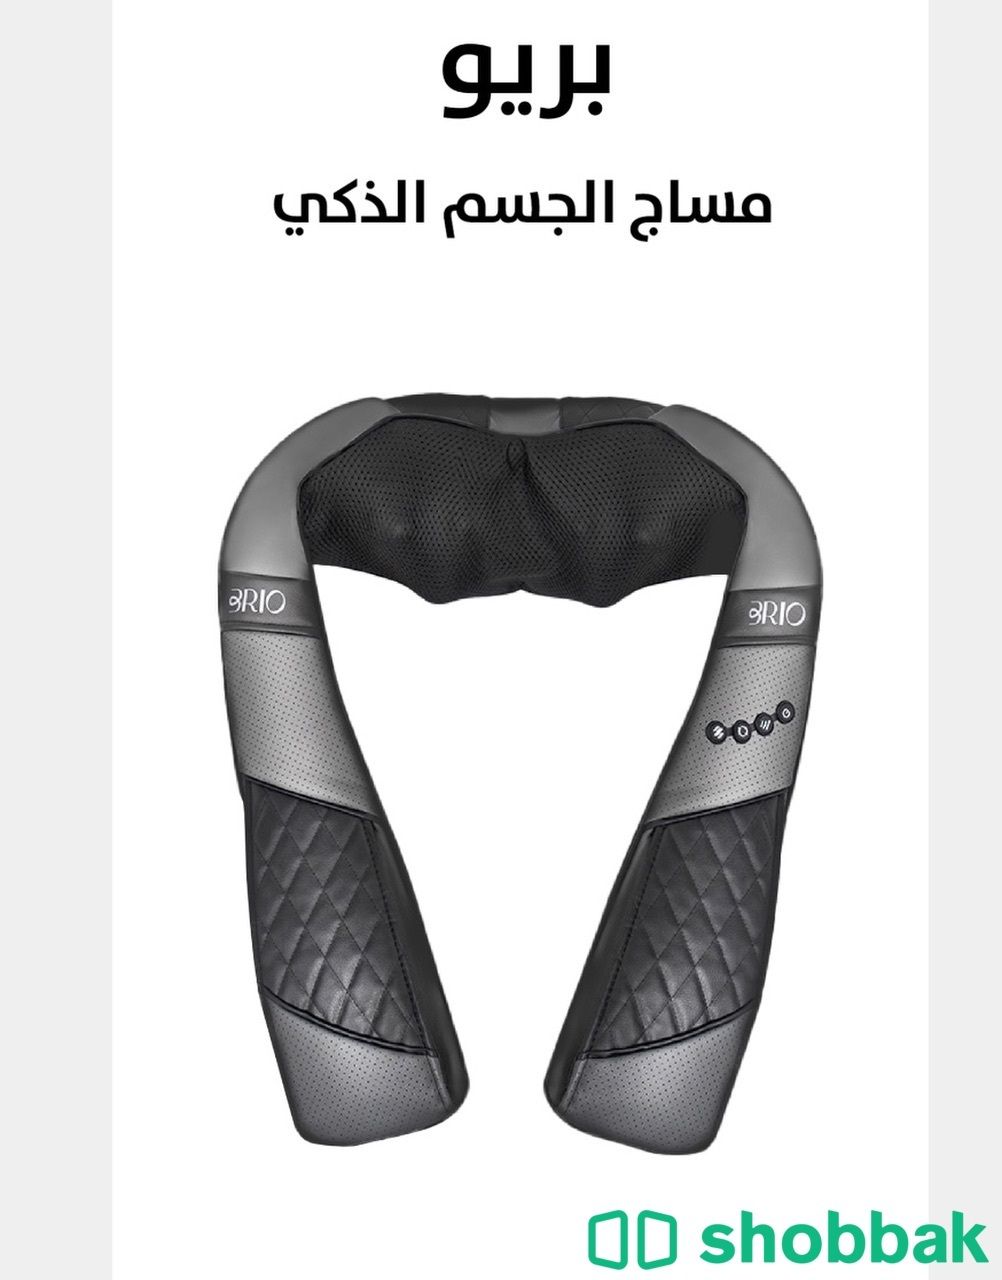 جهاز مساج الجسم حراري  Shobbak Saudi Arabia